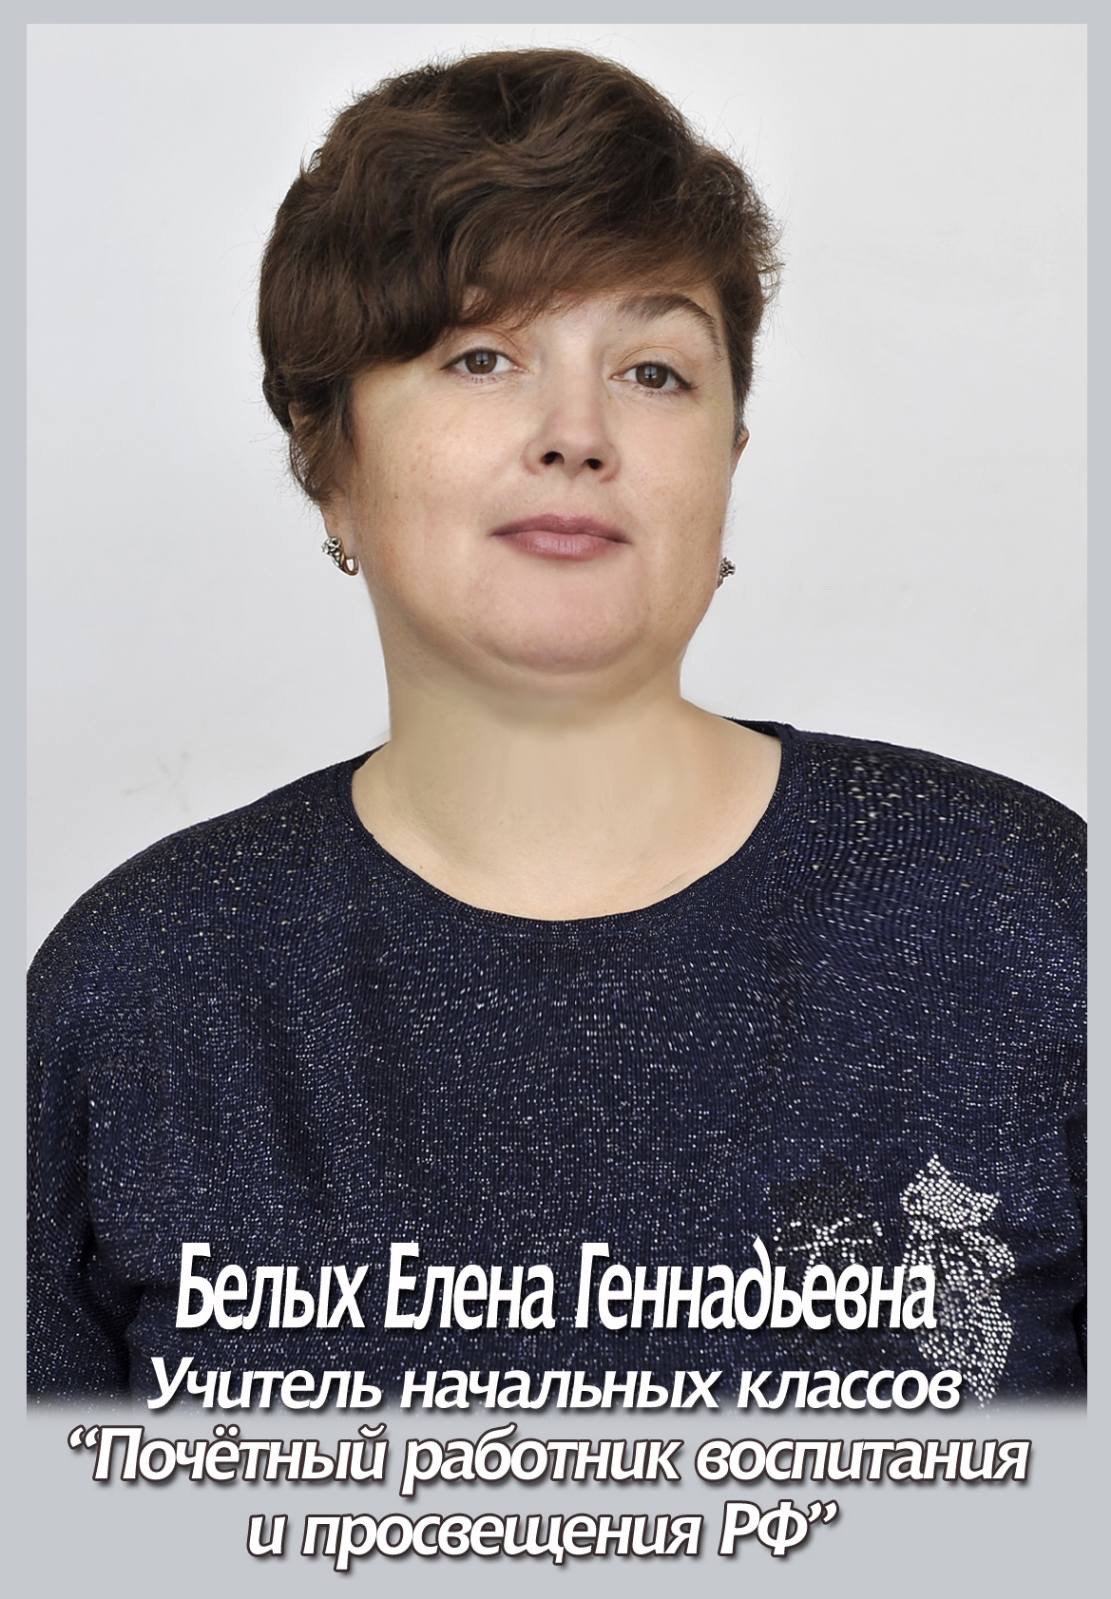 Белых Елена Геннадьевна.